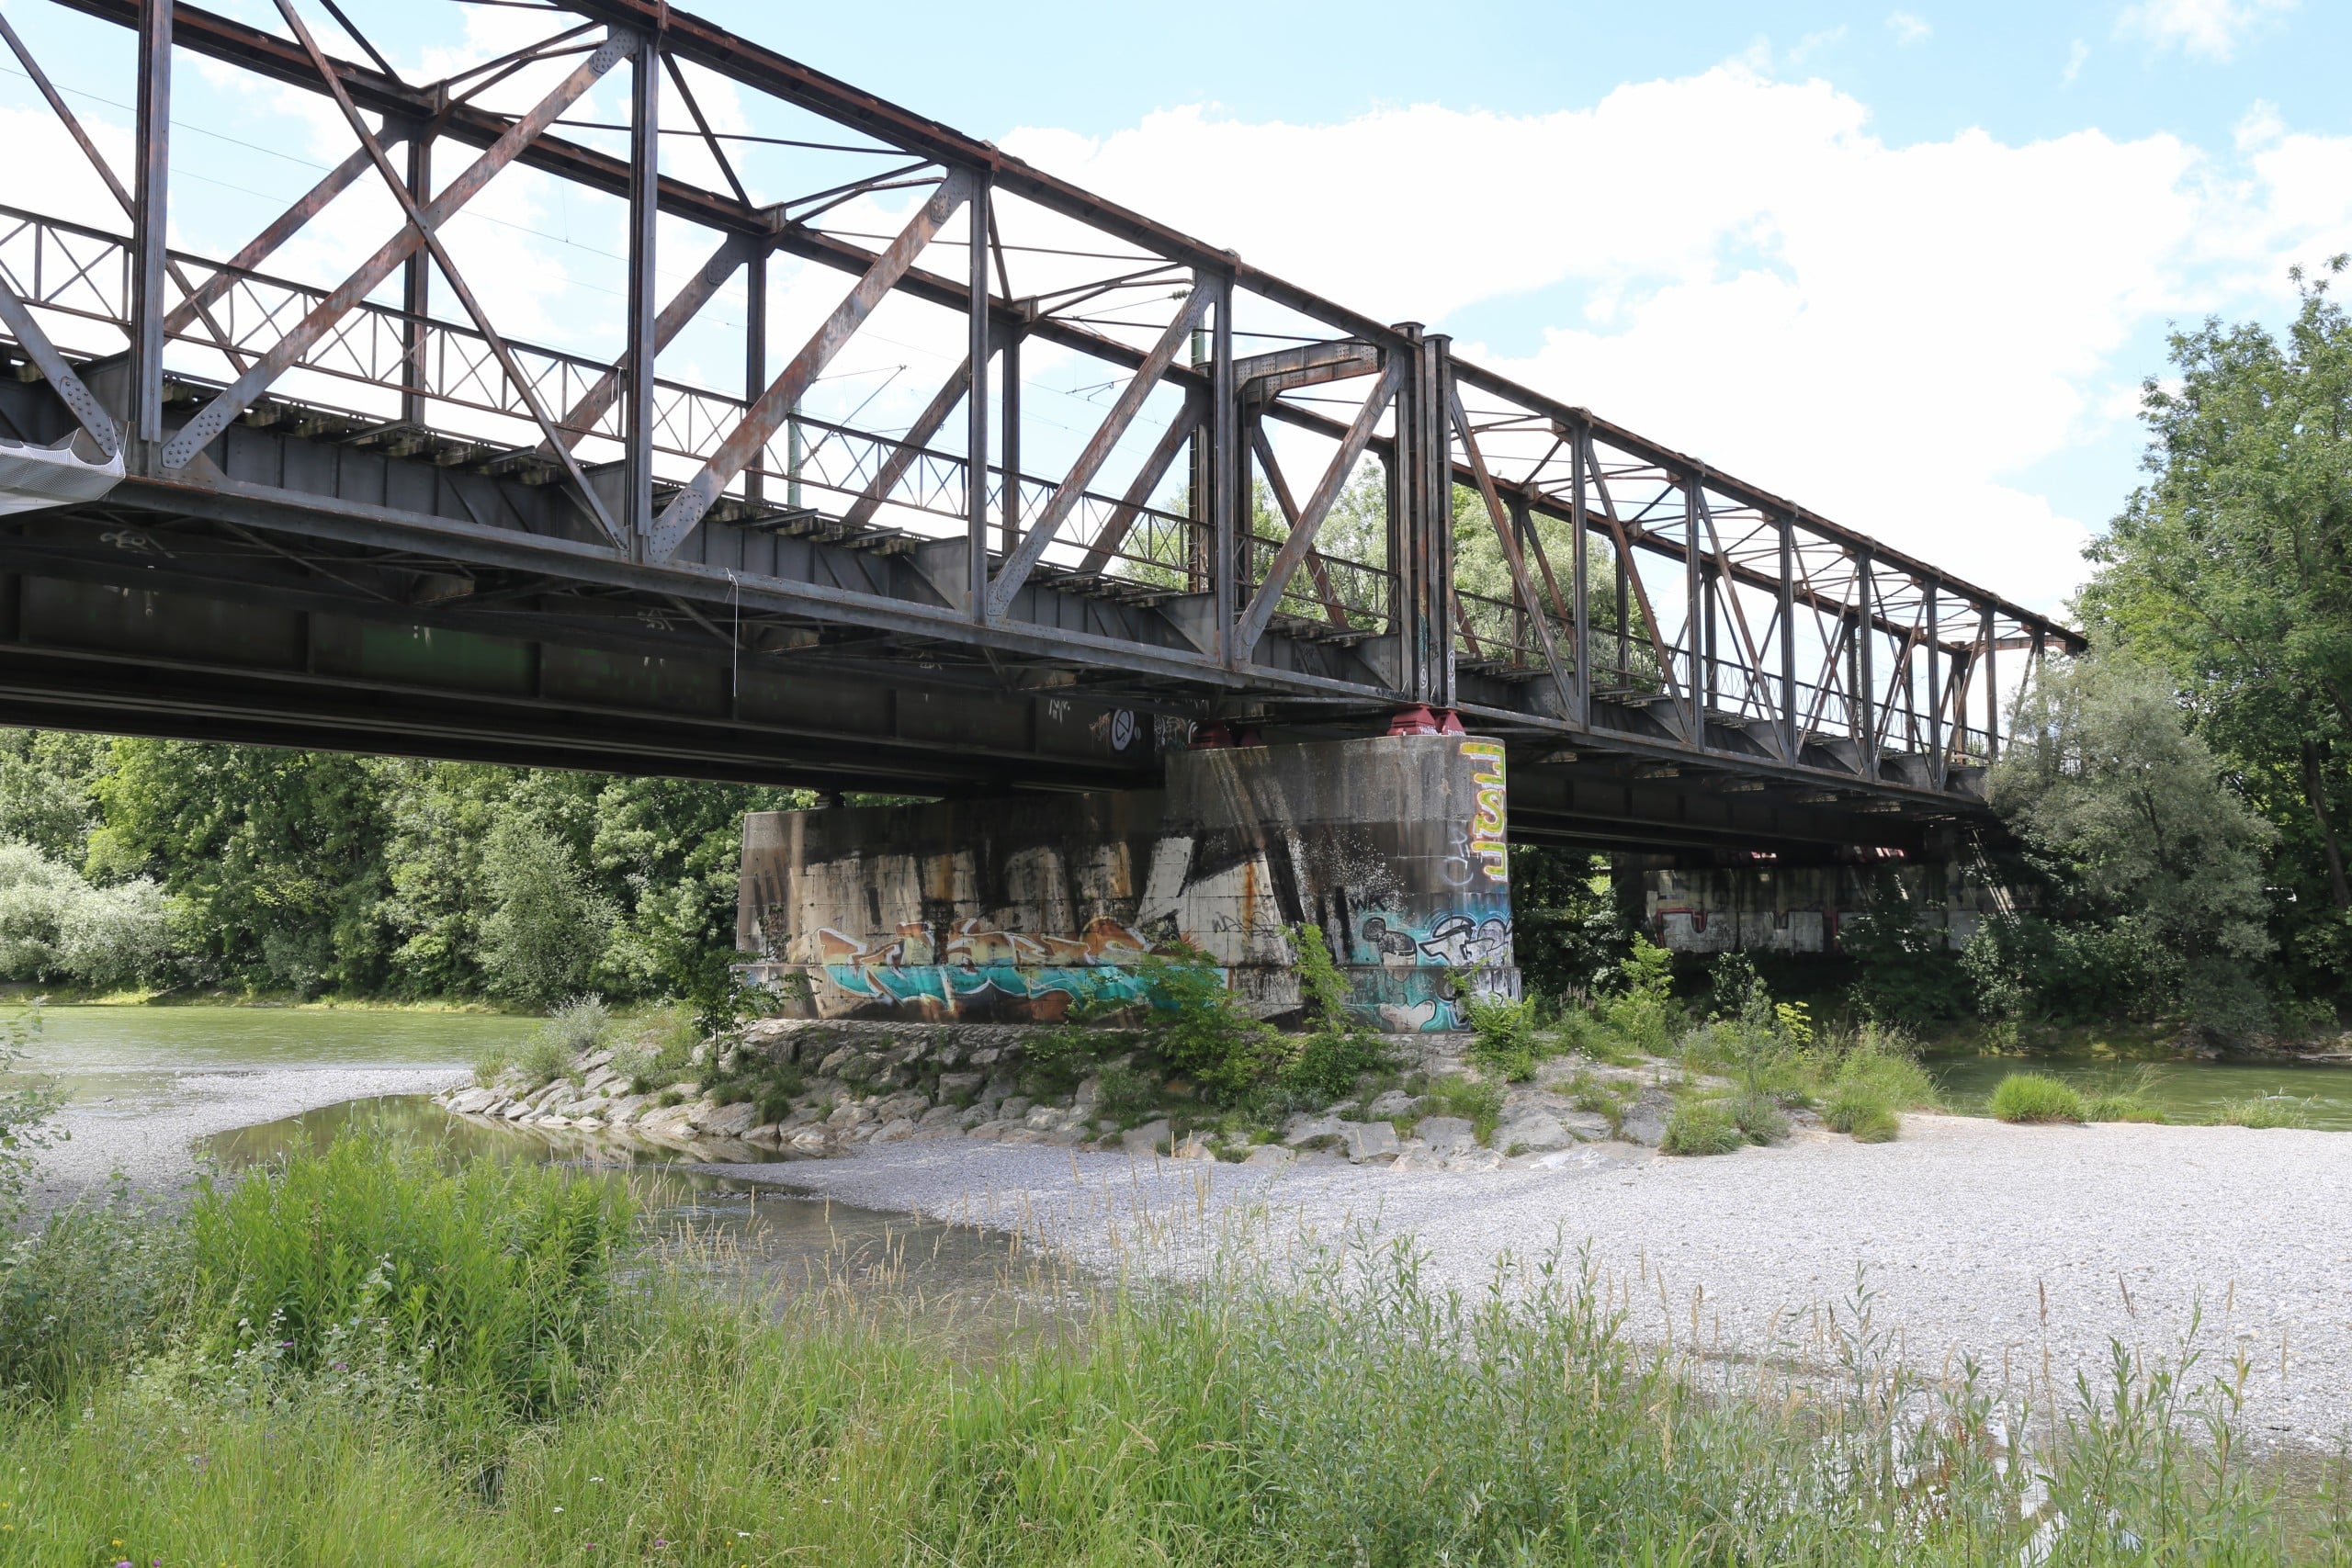 Der Verein Isarlust e.V. hat konkrete Vorschläge für die fußgängerfreundliche Gestaltung des stillgelegten Gleises der Braunauer Eisenbahnbrücke in München. Bildquelle: Rufus46, CC BY-SA 3.0 , via Wikimedia Commons